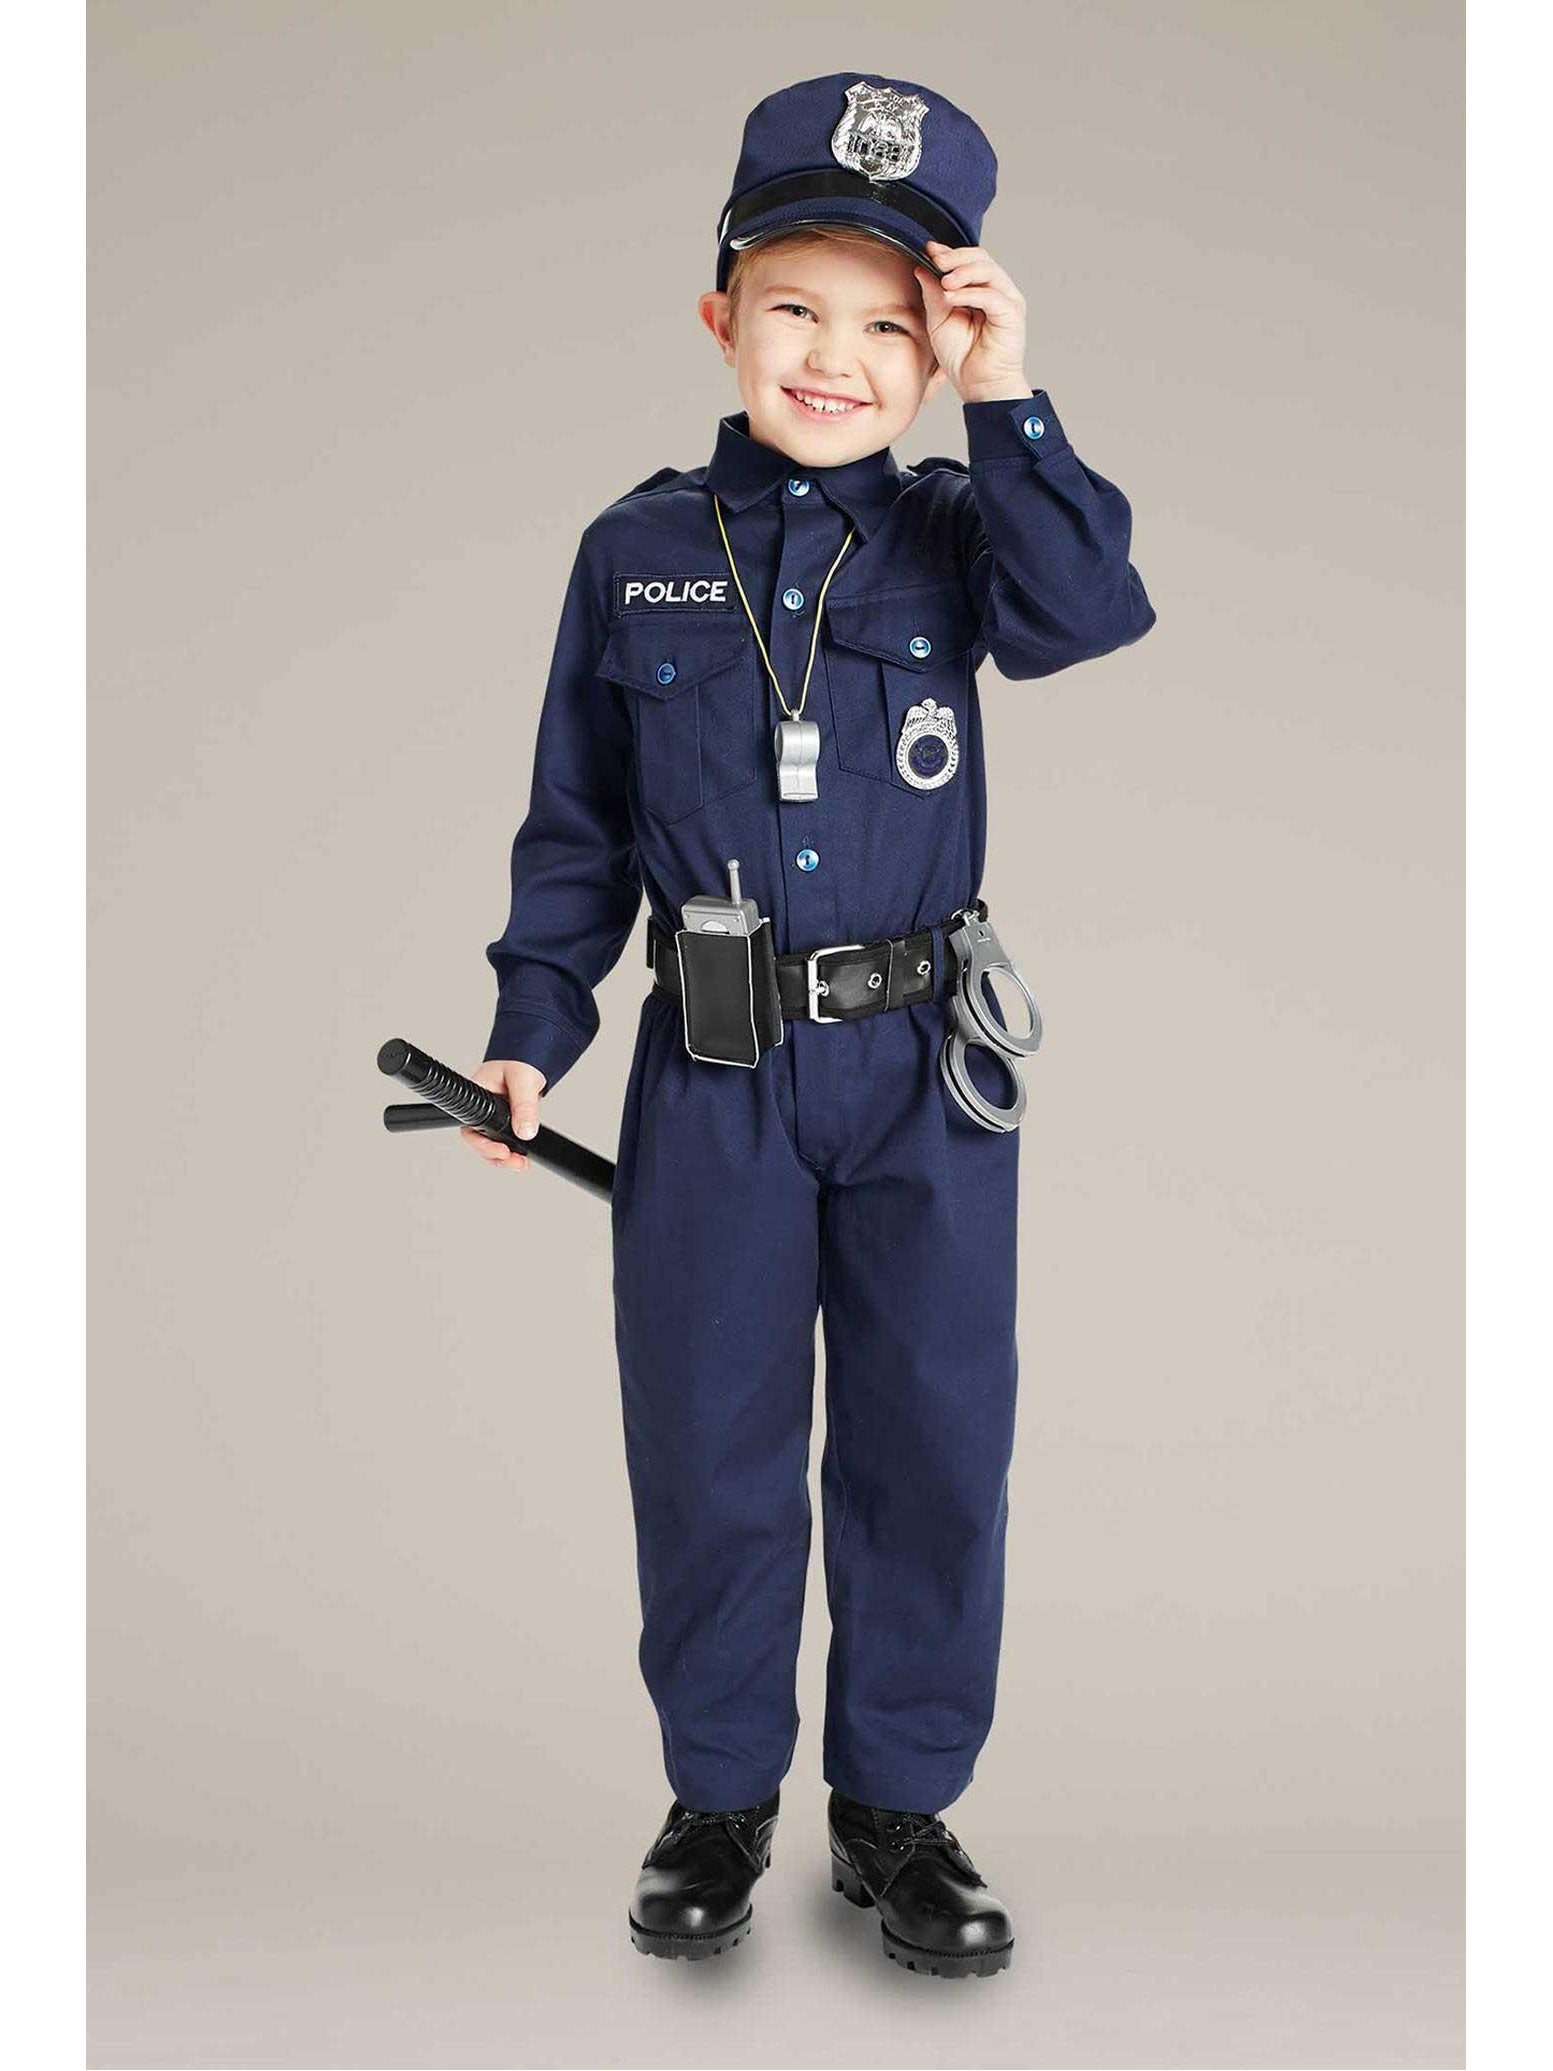 Jr. Police Officer Costume For Kids  blu alt1